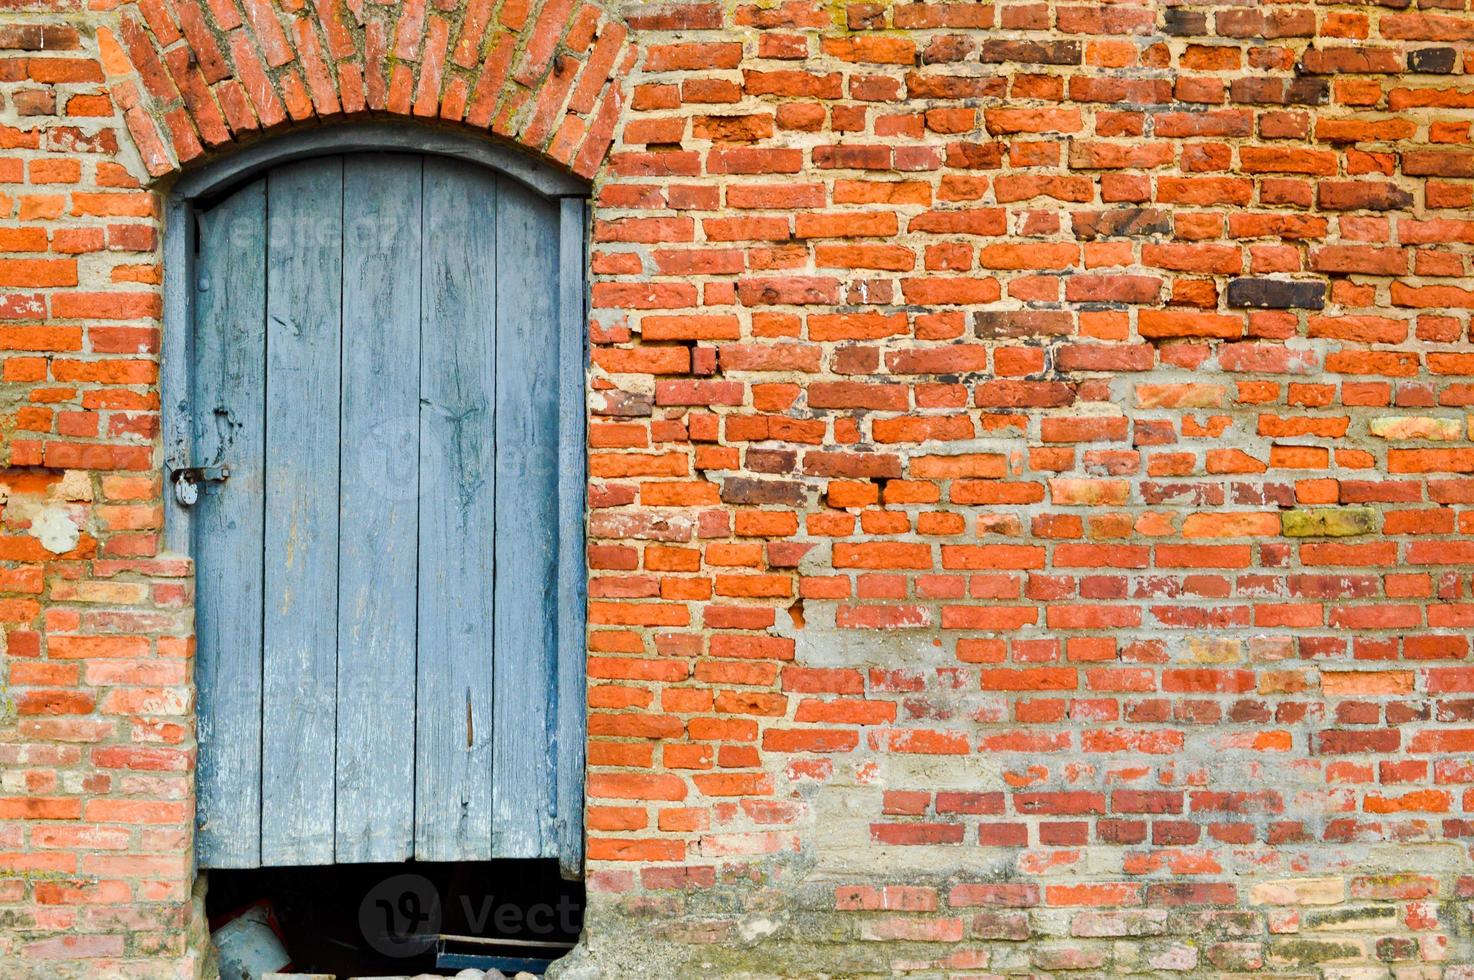 a textura da velha porta grossa natural de madeira maciça antiga antiga medieval com rebites e pregos padrões e fechaduras feitas de pranchas de madeira no contexto de uma parede de pedra de tijolo vermelho foto